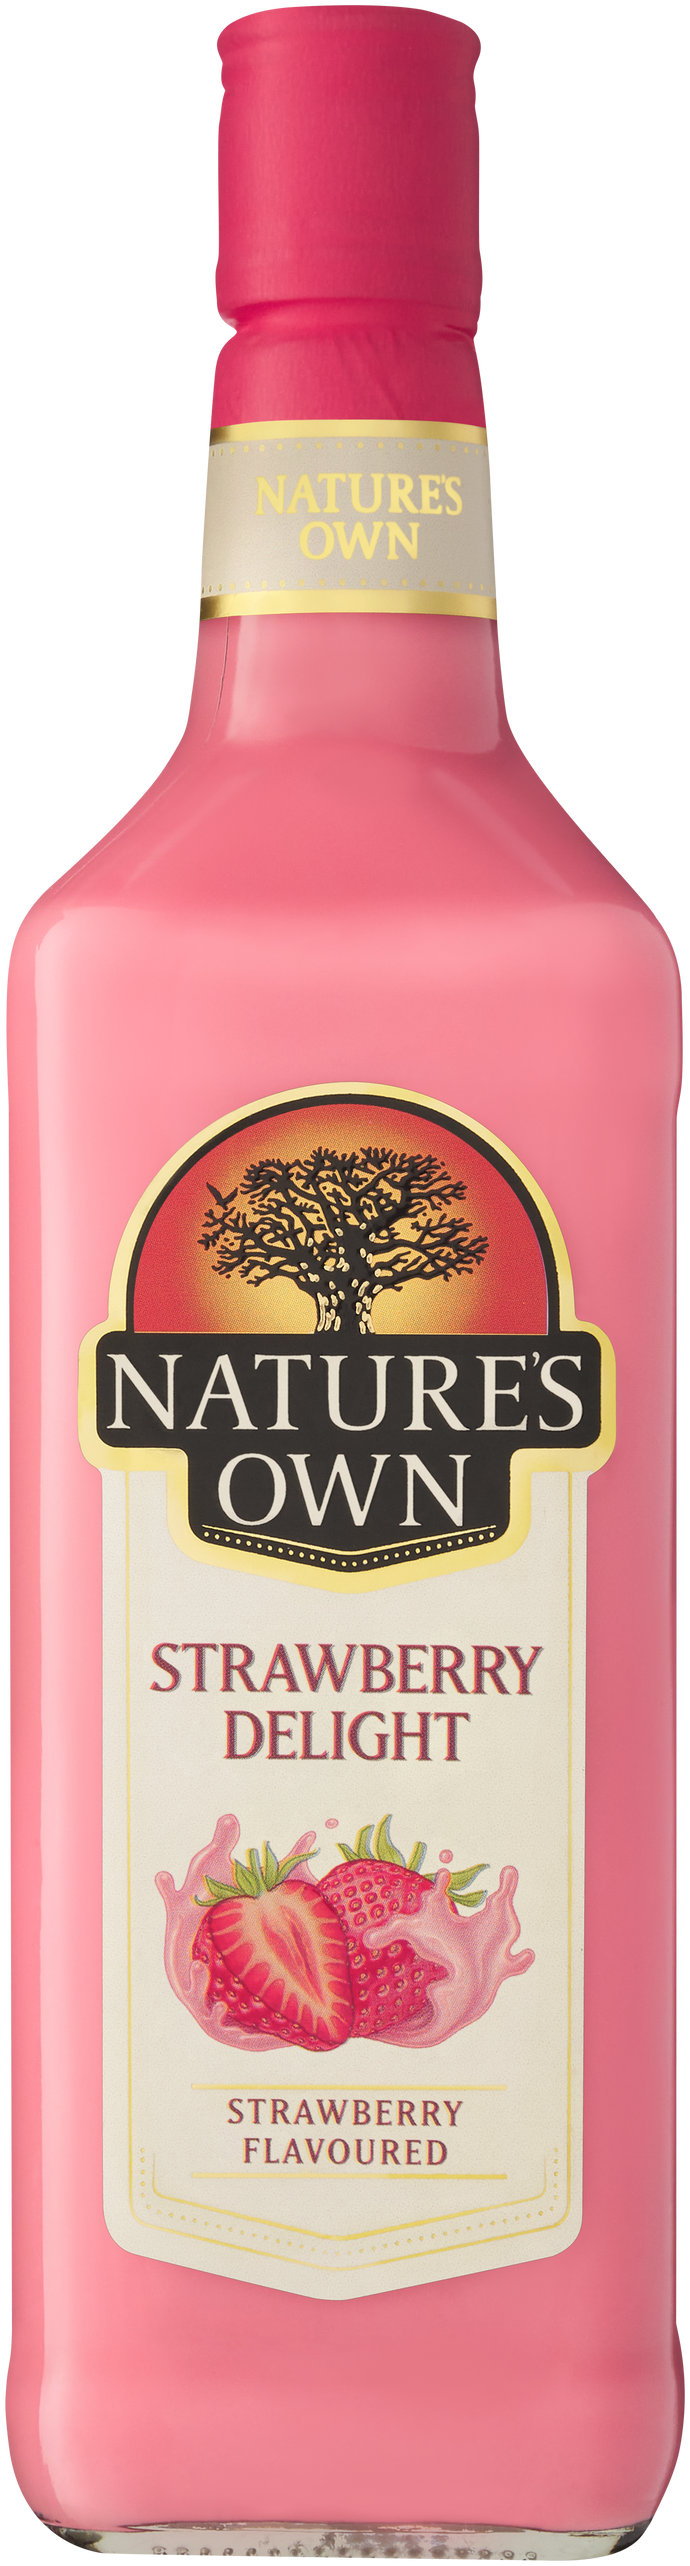 Nature's Own Strawberry Delight Cream Liqueur